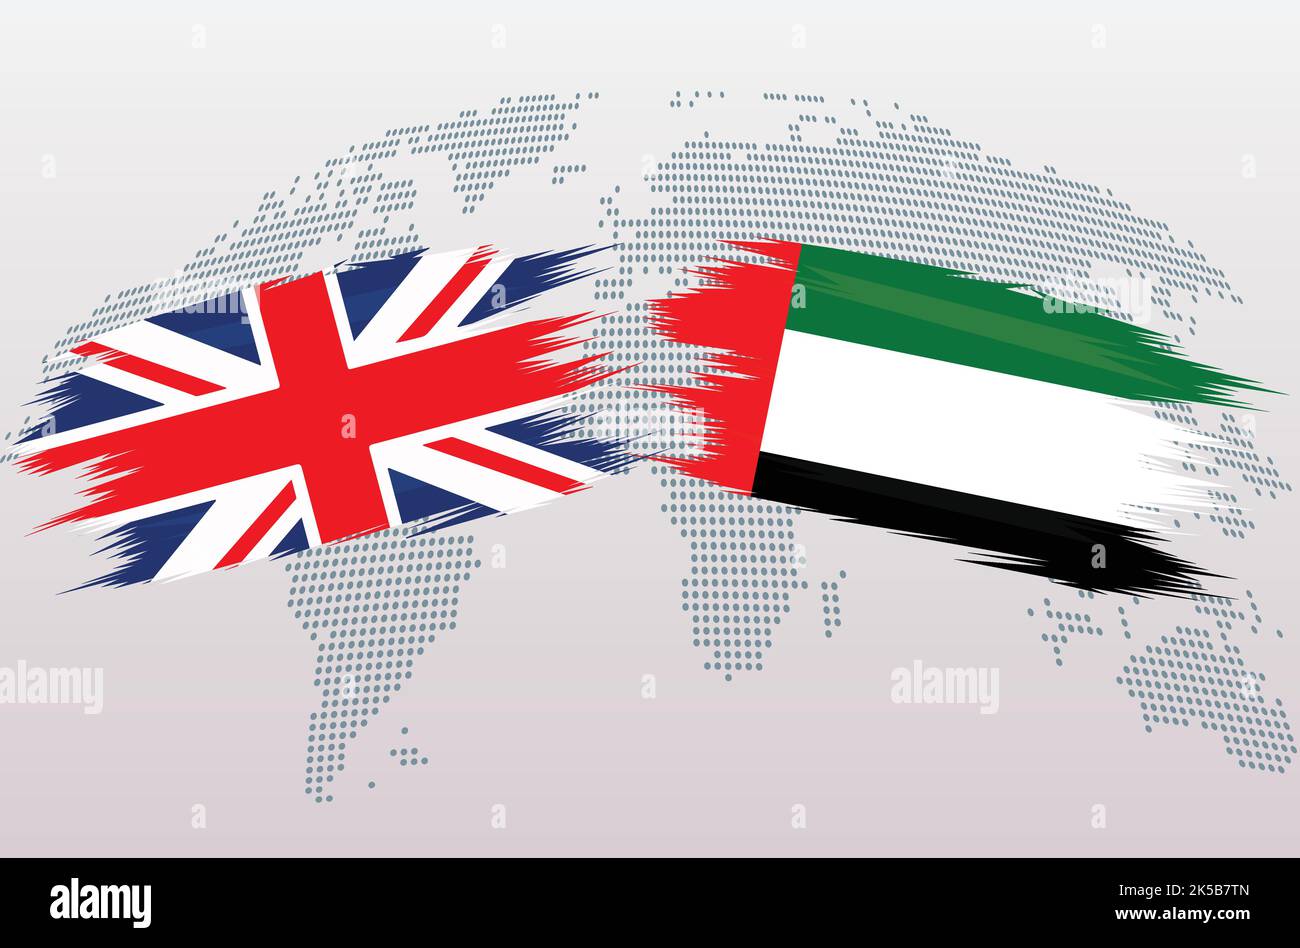 Britische Flaggen Großbritannien und VAE. Die Flaggen des Vereinigten Königreichs und der Vereinigten Arabischen Emirate, isoliert auf grauem Hintergrund der Weltkarte. Vektorgrafik. Stock Vektor